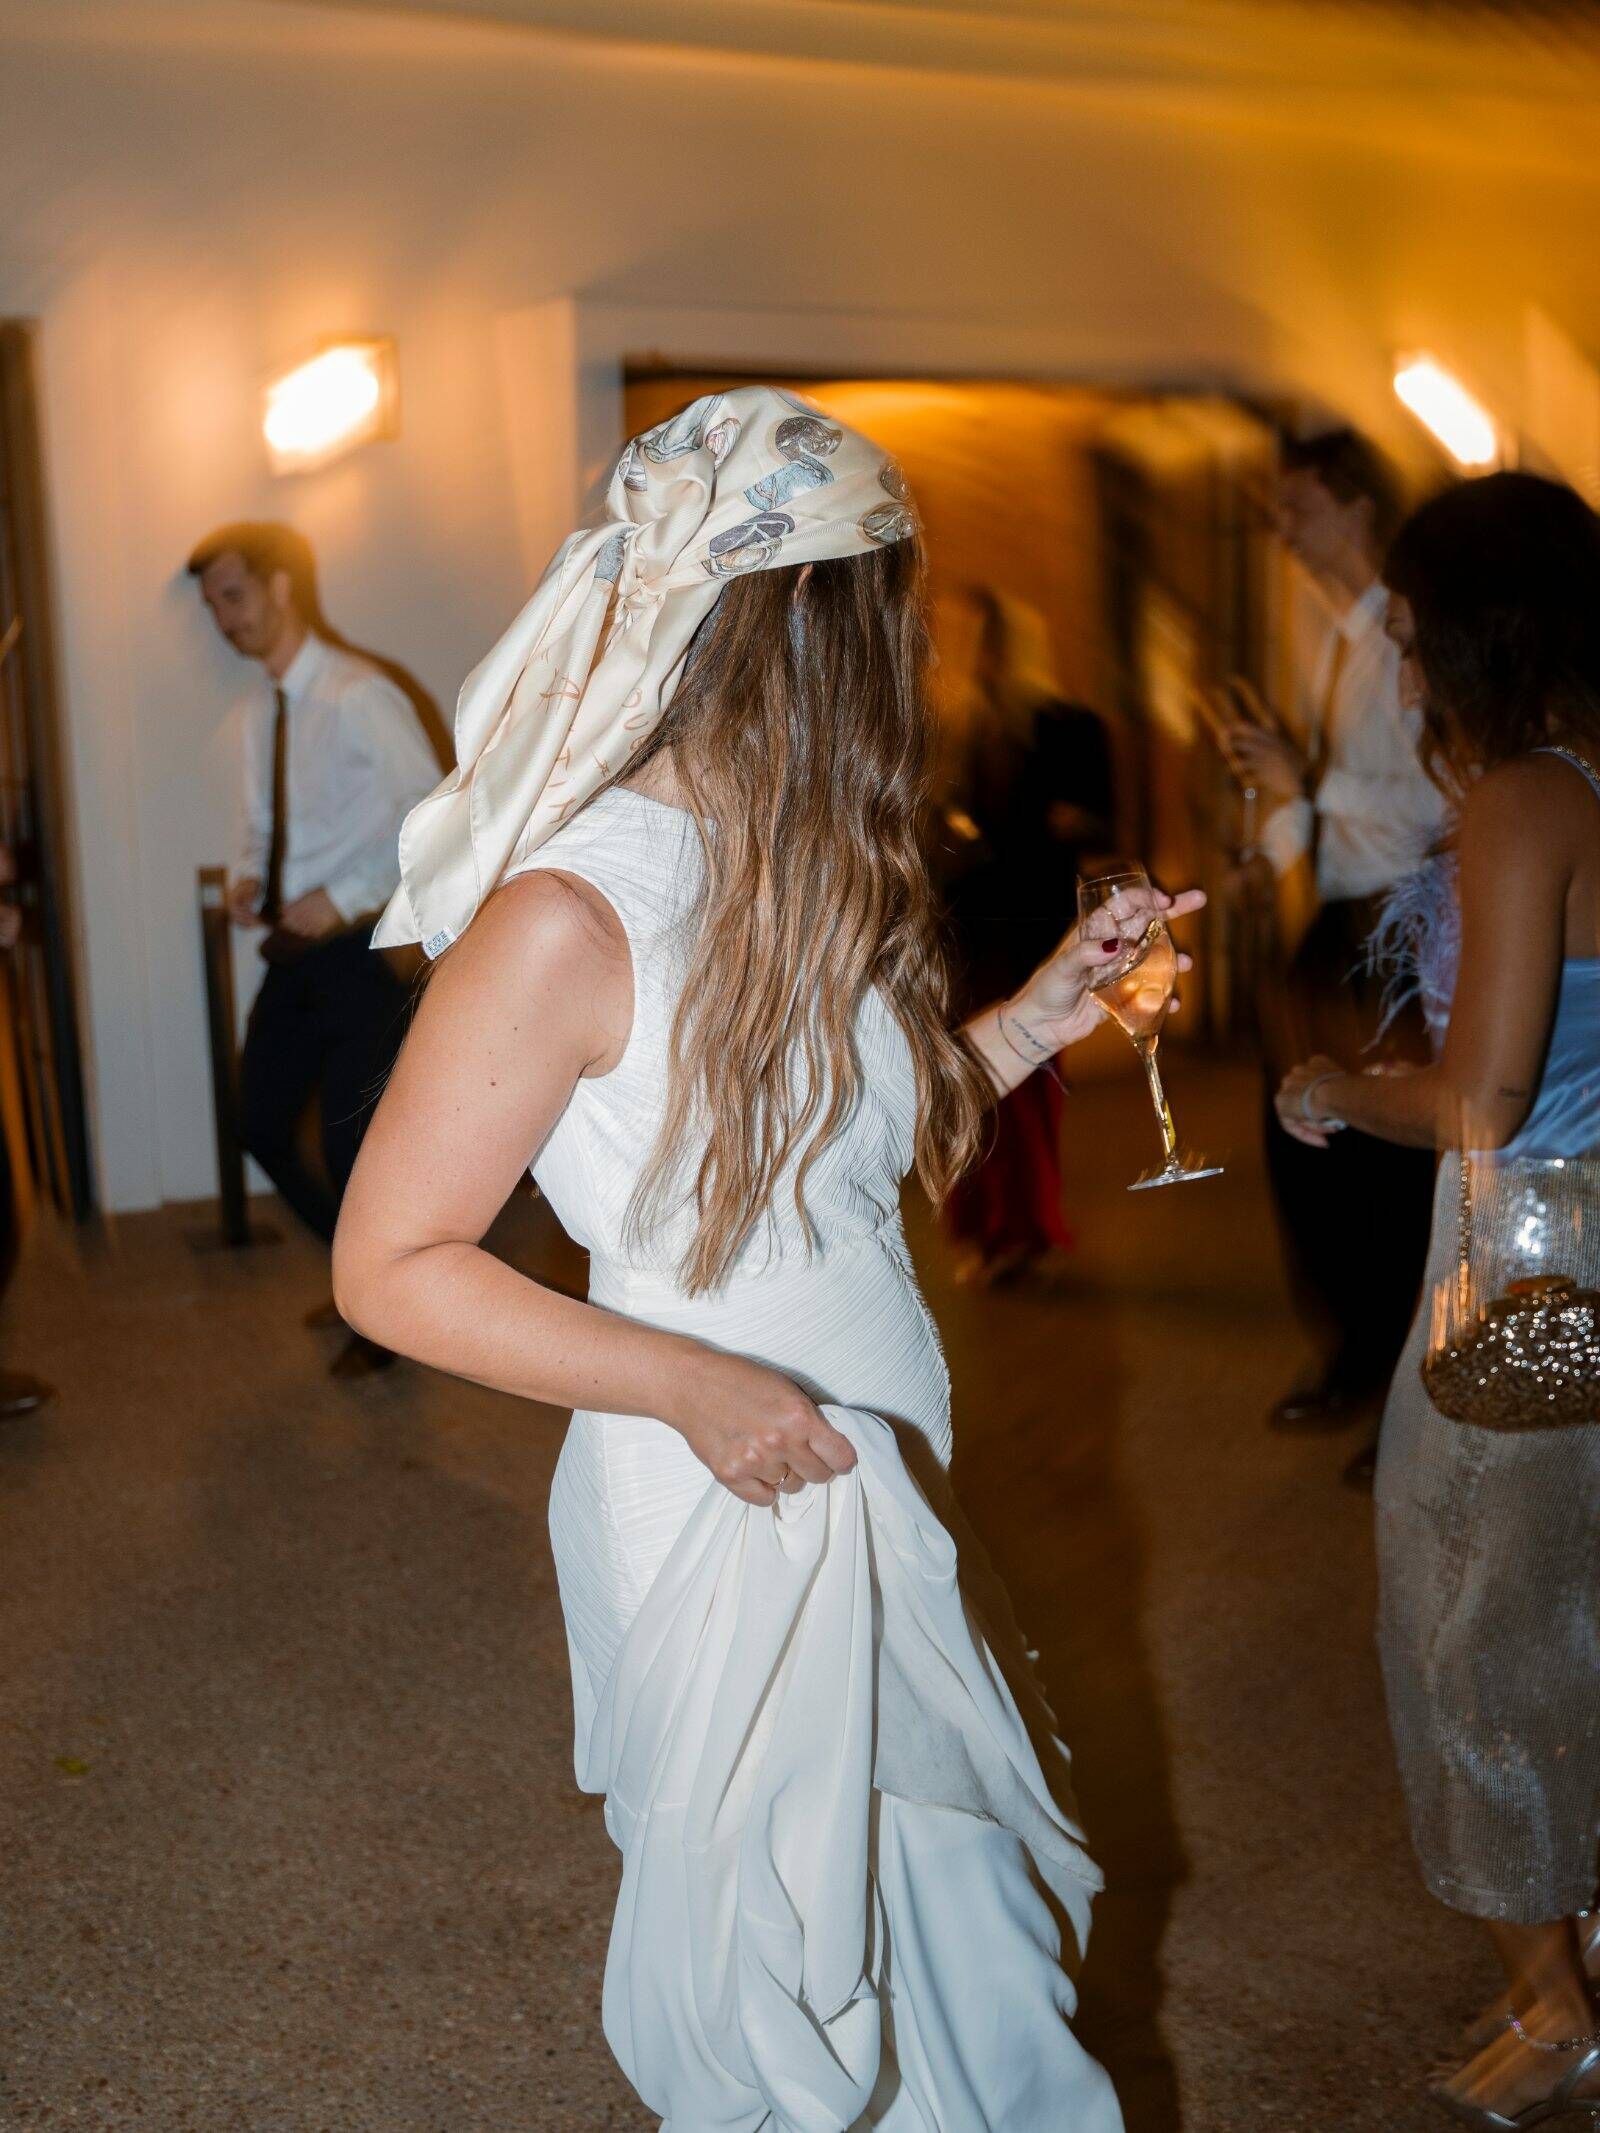 el día de elena: boda sorpresa, un vestido de novia muy tendencia y enclave campestre